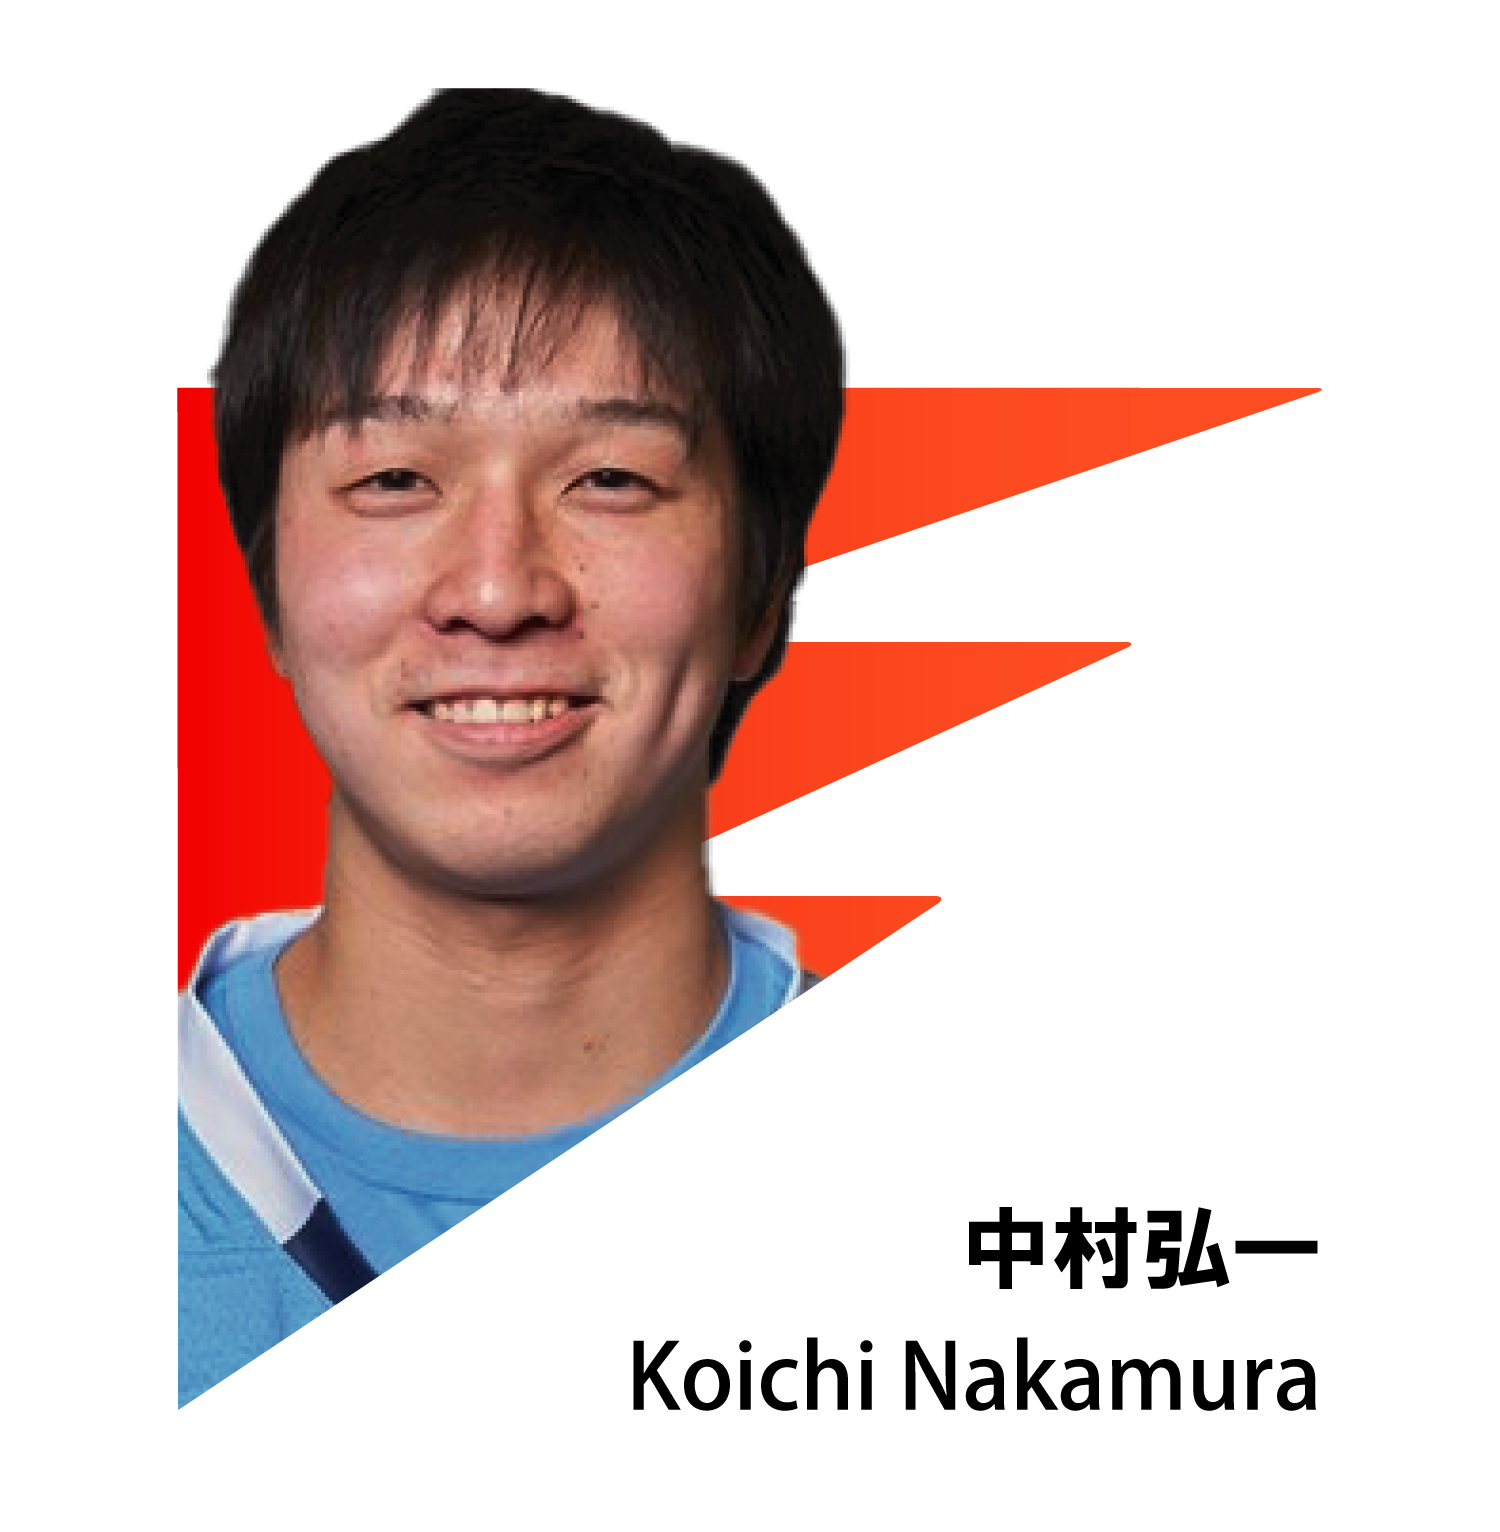 KOICHI NAKAMURA